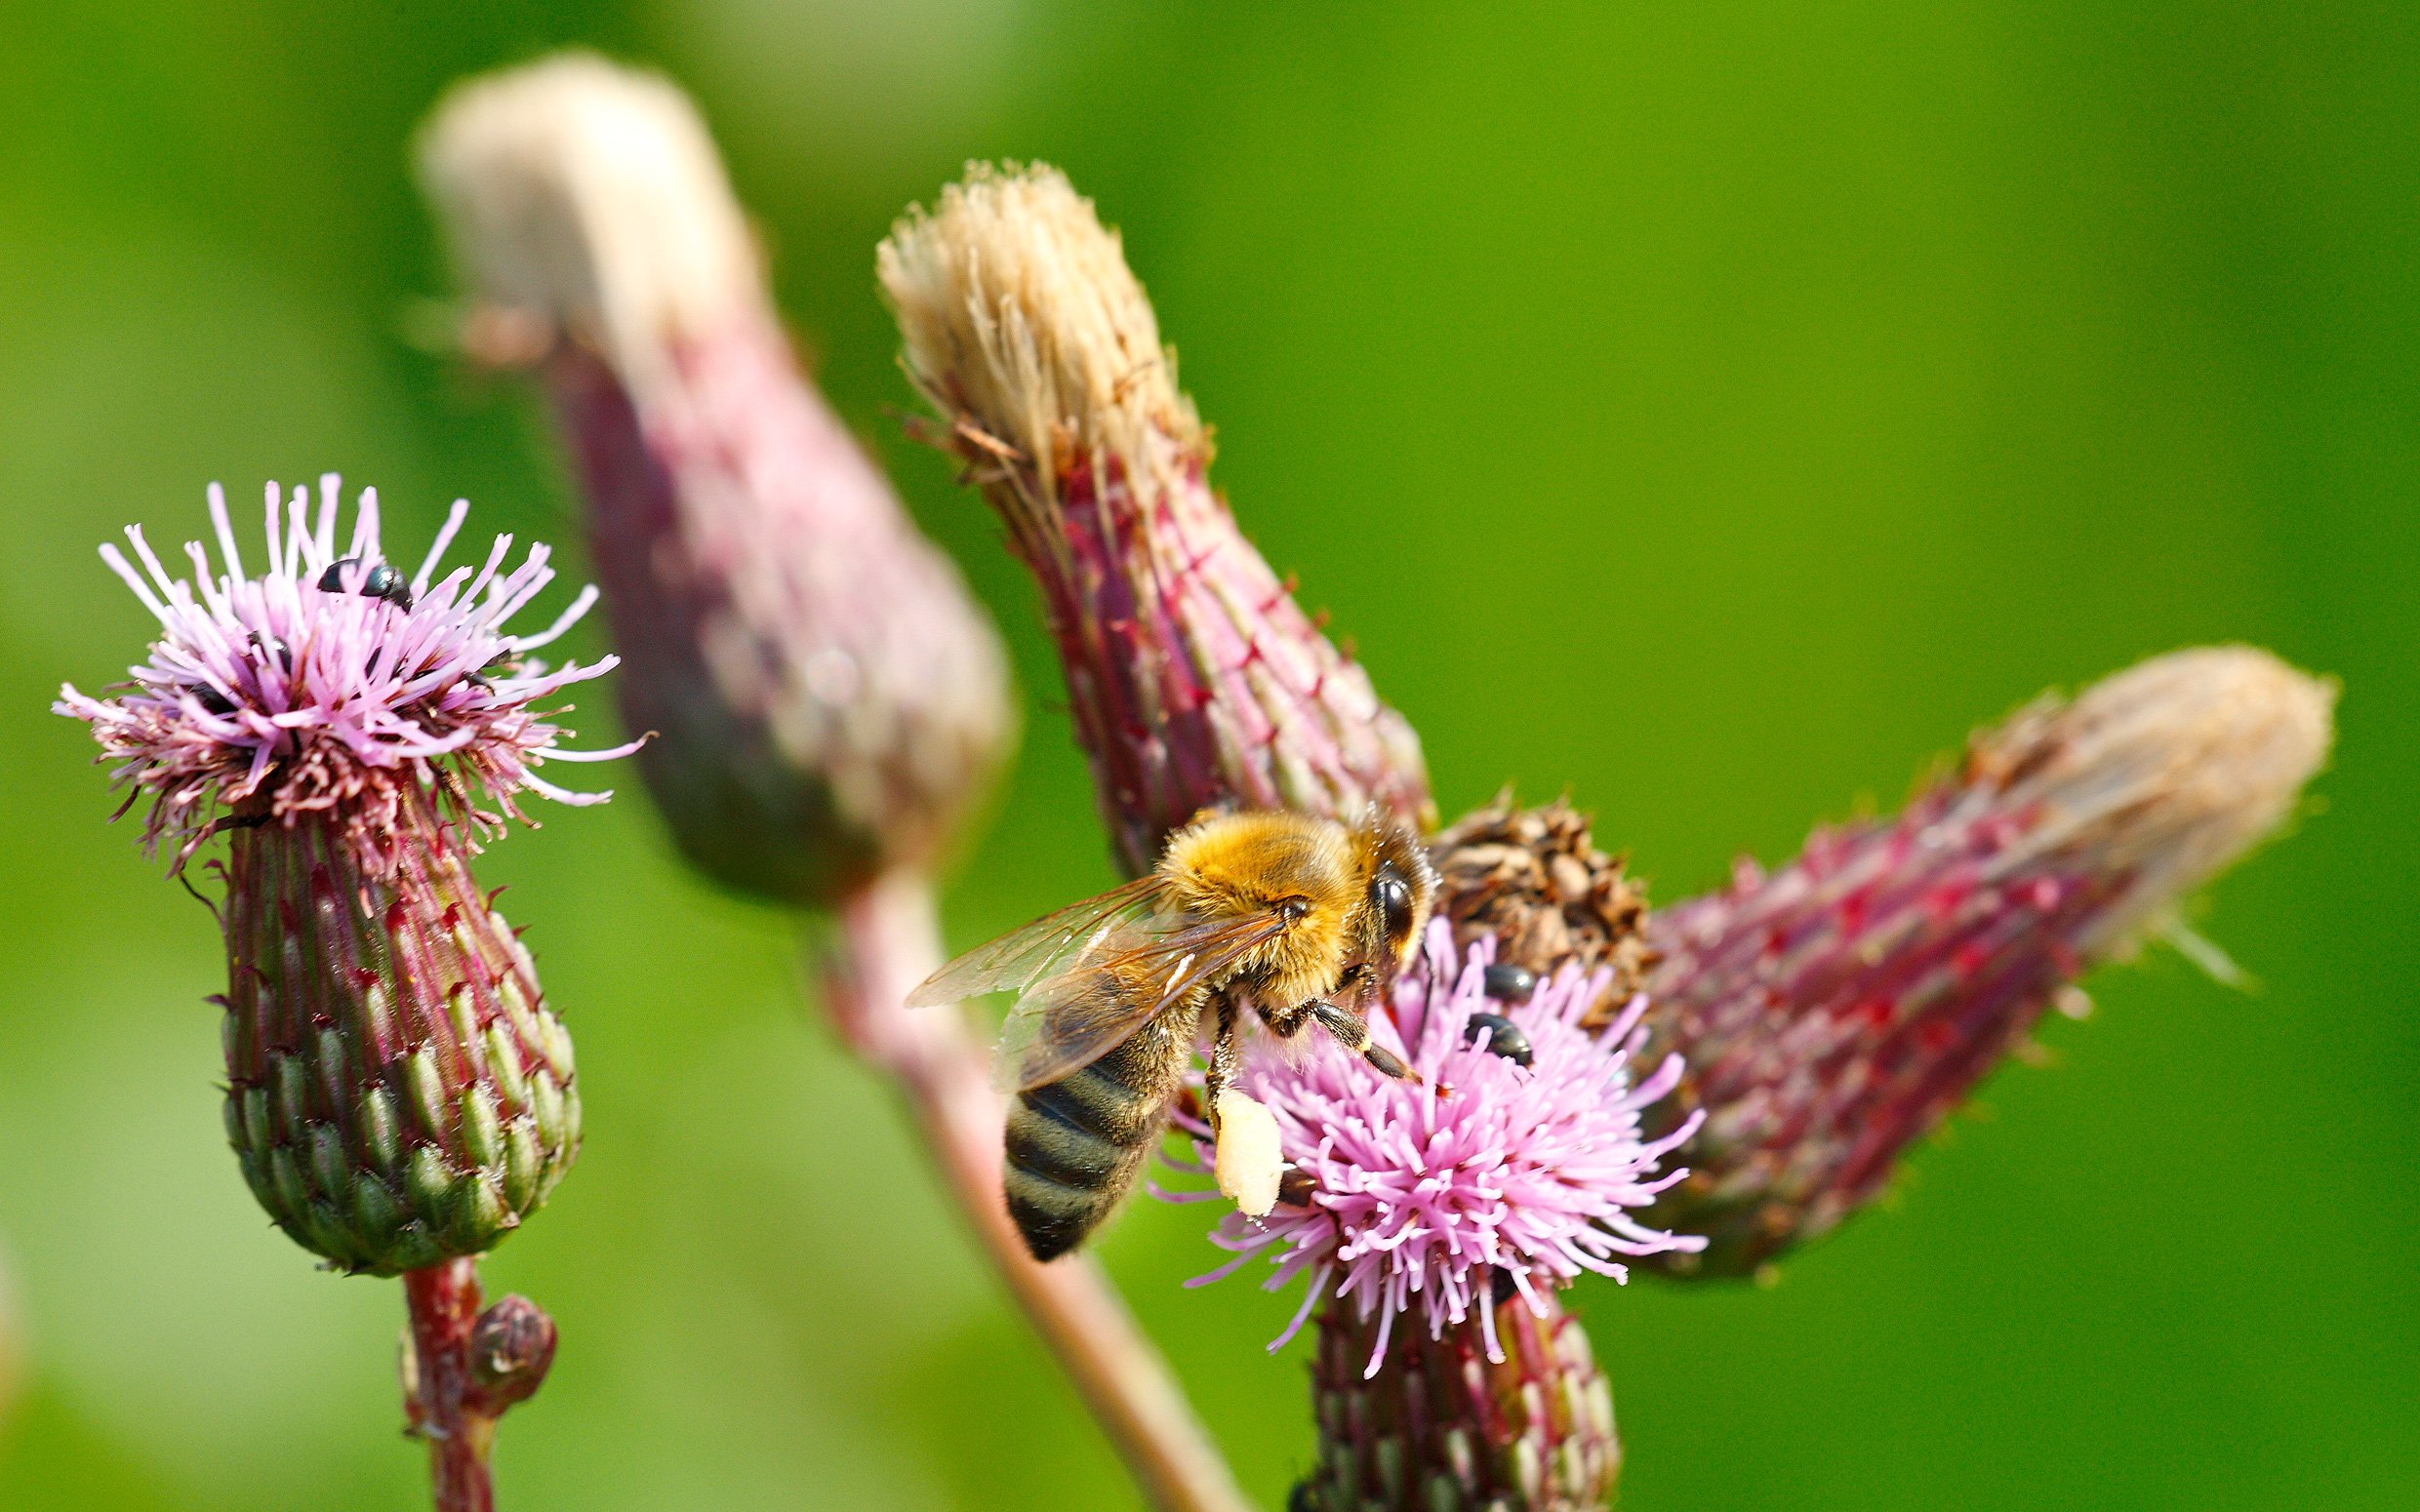 Eine Nahaufnahme von einer Biene, die auf einer Blume sitzt